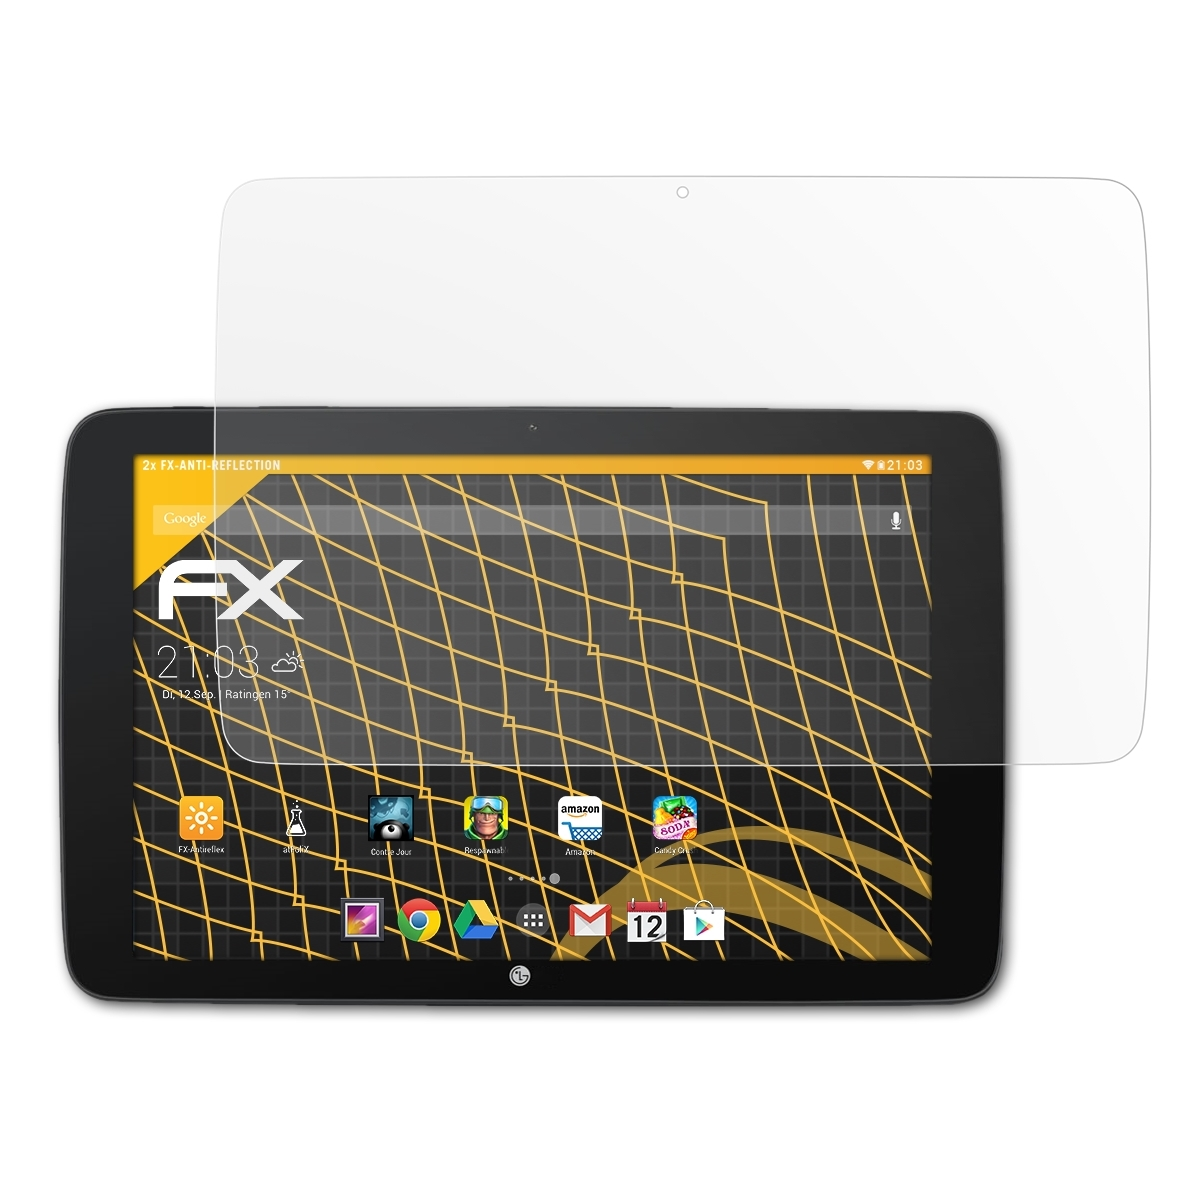 FX-Antireflex 2x G Pad ATFOLIX 10.1) LG Displayschutz(für